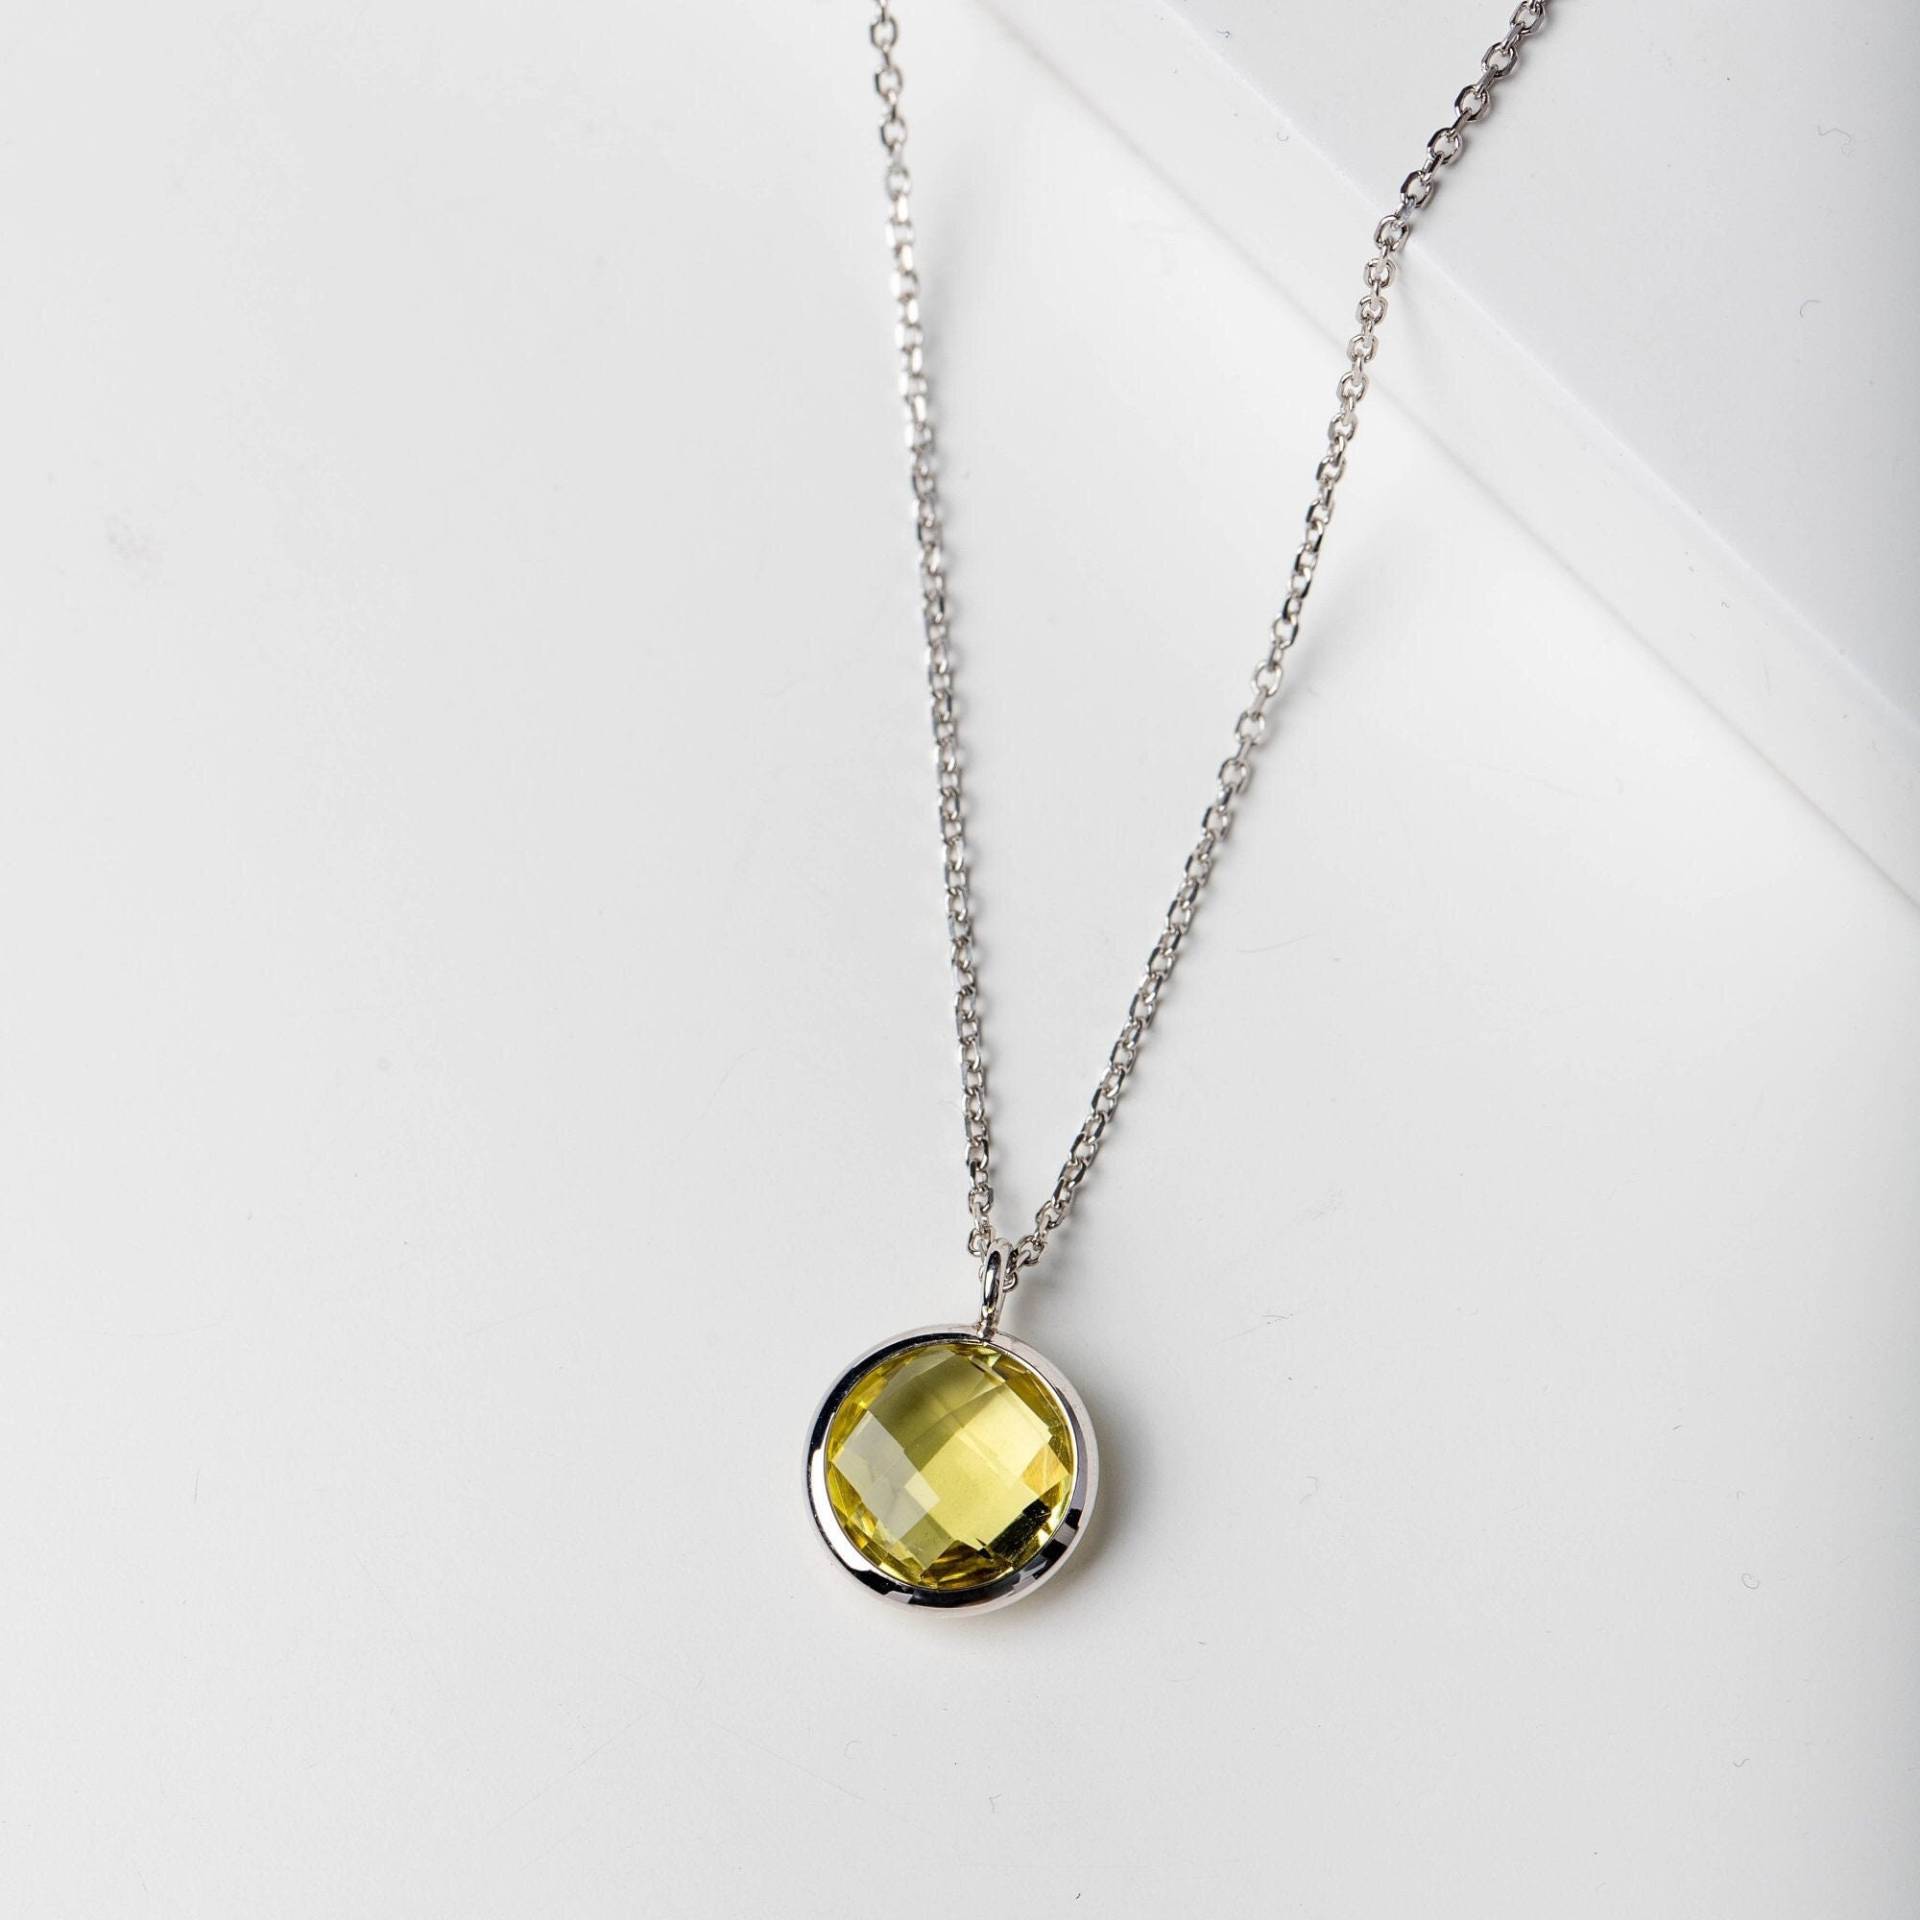 Gold Halskette Lemon Quartz Natürlicher Edelstein - 14K Layered Für Frau Geschenk Sie Gn00018-005 von KyklosJewelry